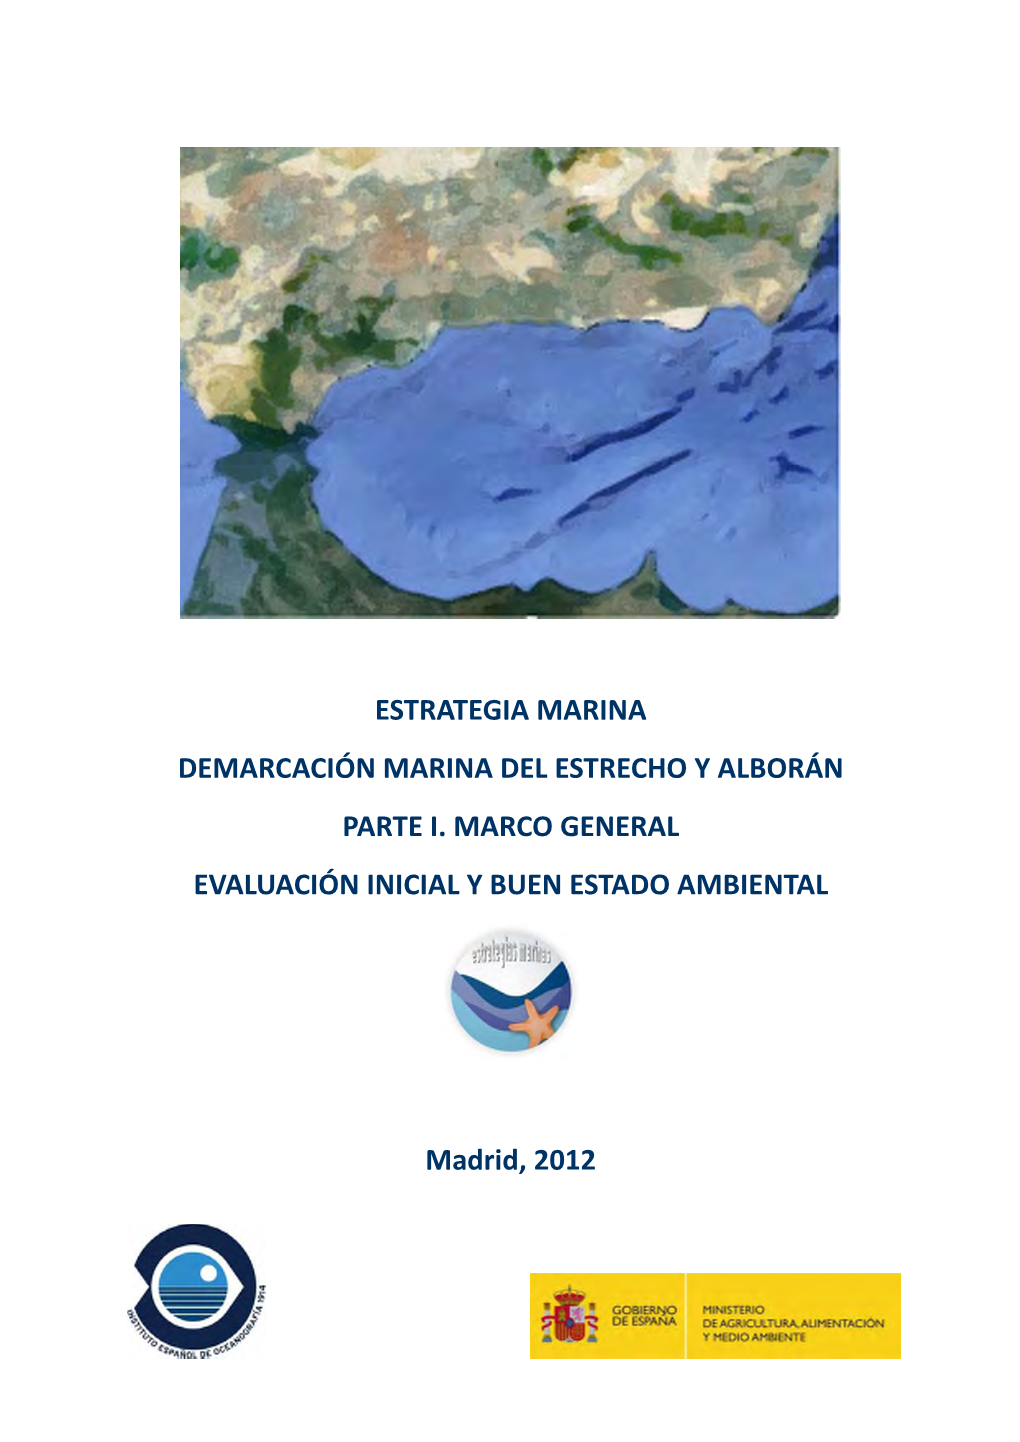 Parte I. Marco General: Características De La Demarcación Marina